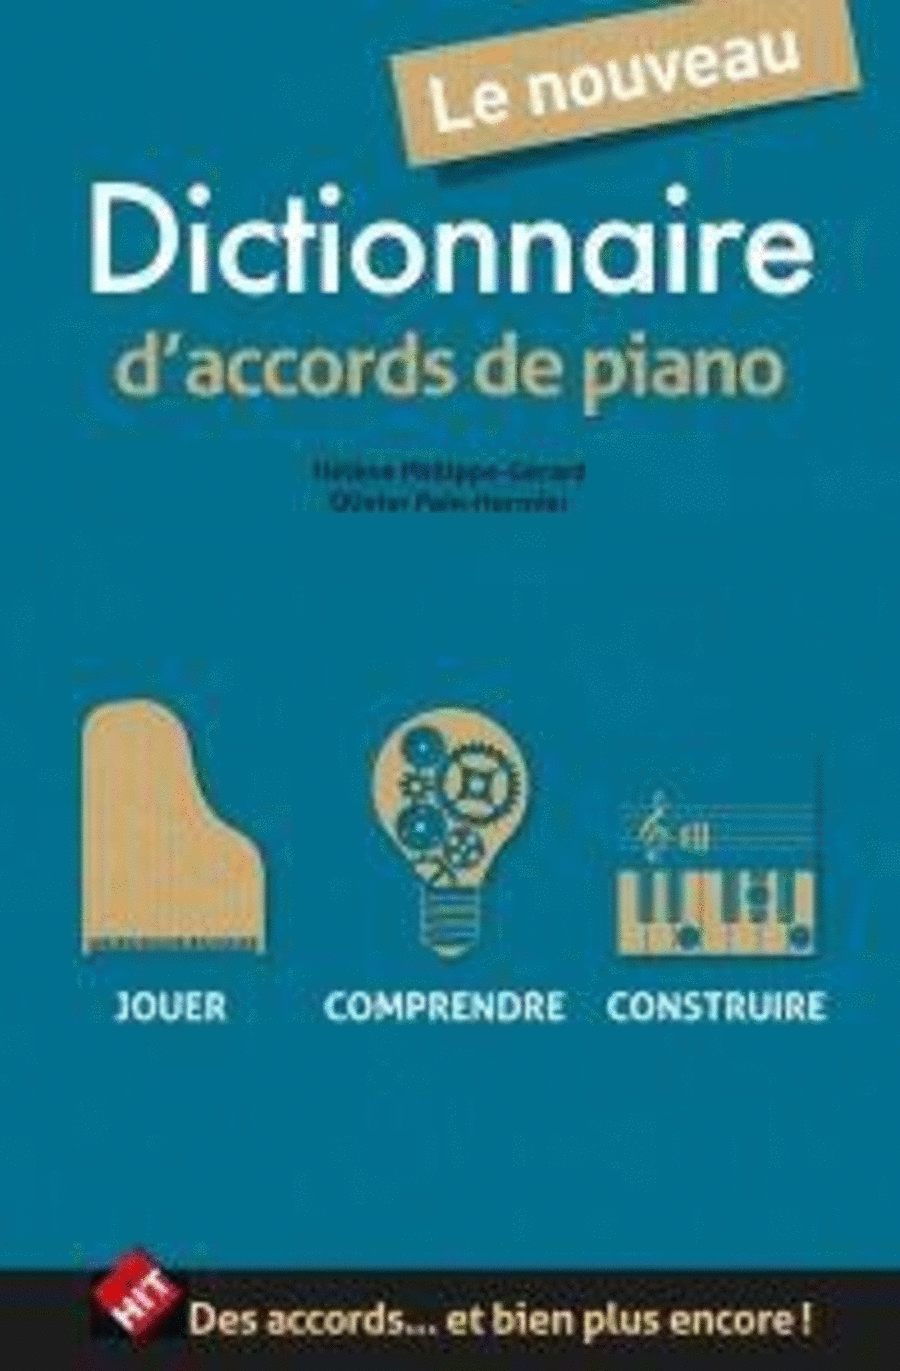 Le Nouveau Dictionnaire d